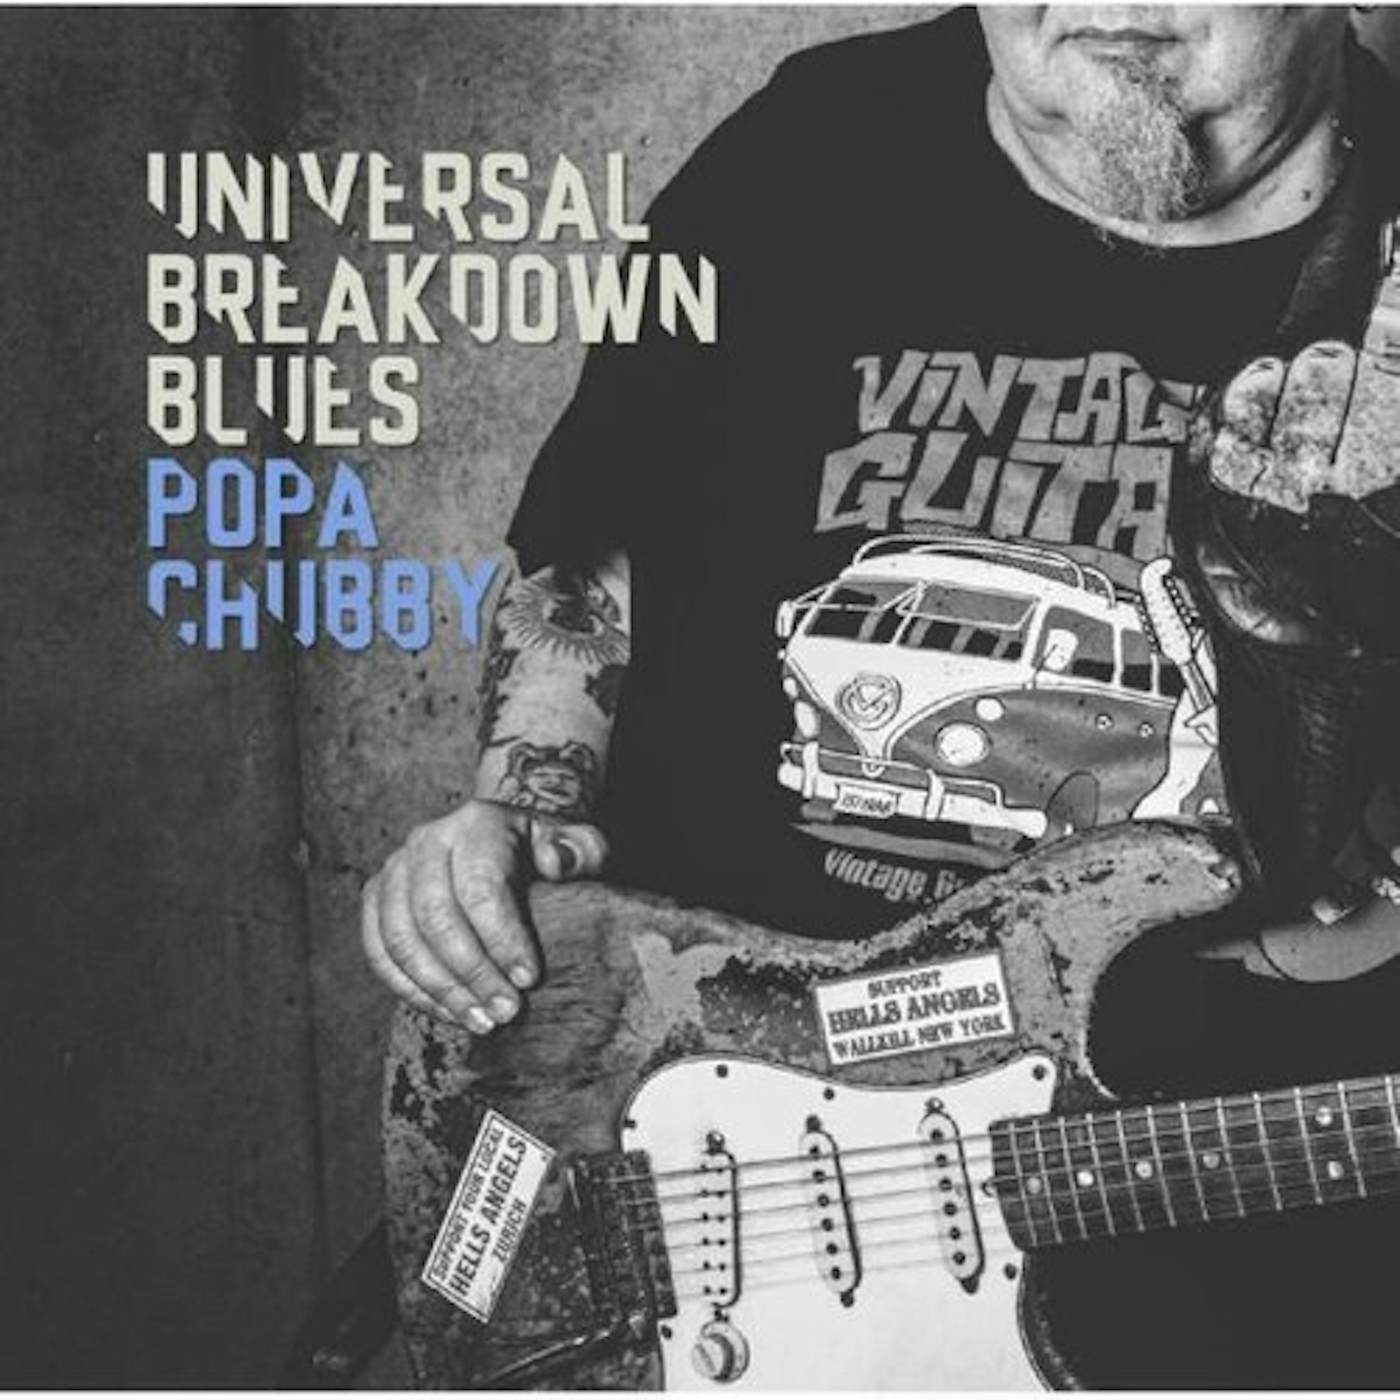 Popa Chubby UNIVERSAL BREAKDOWN BLUES CD